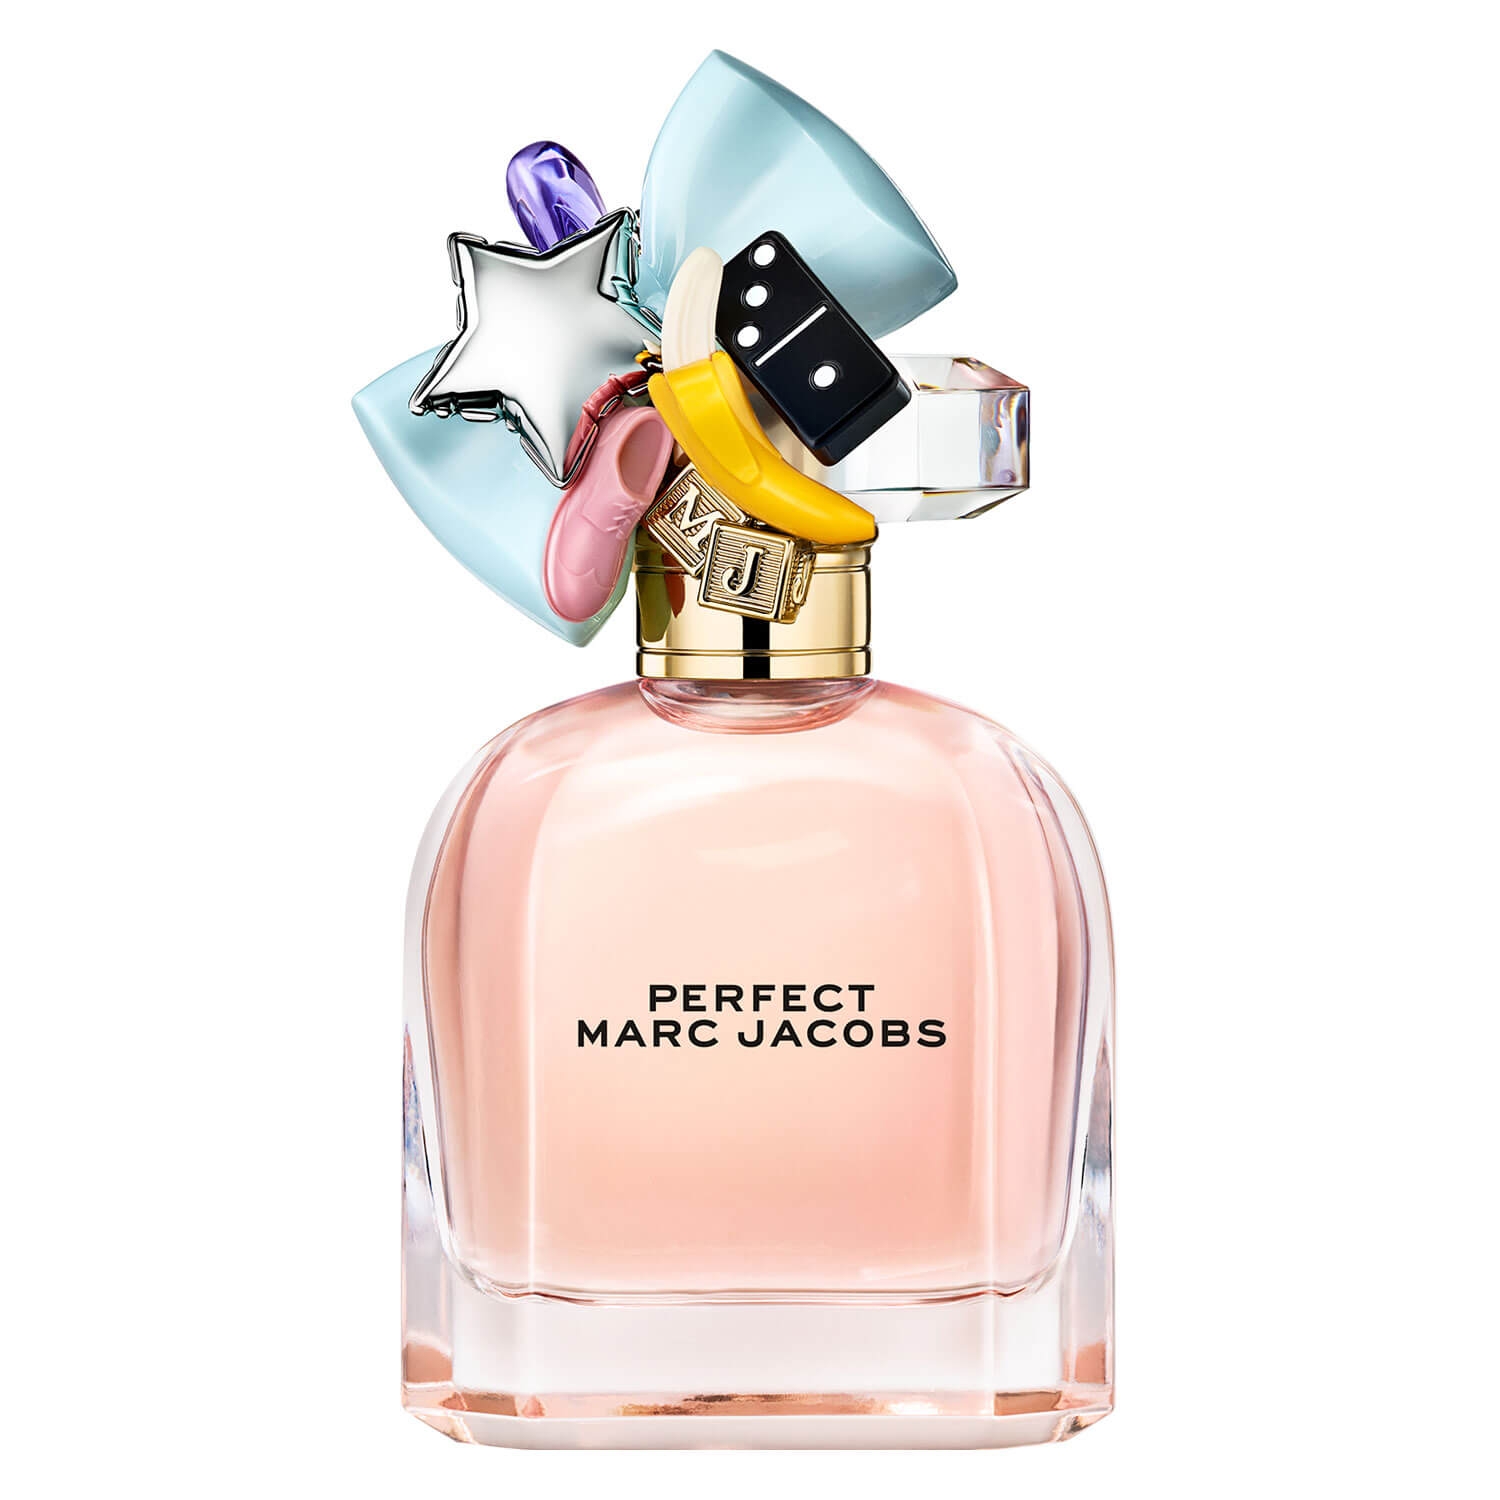 Produktbild von Marc Jacobs - Perfect Eau de Parfum